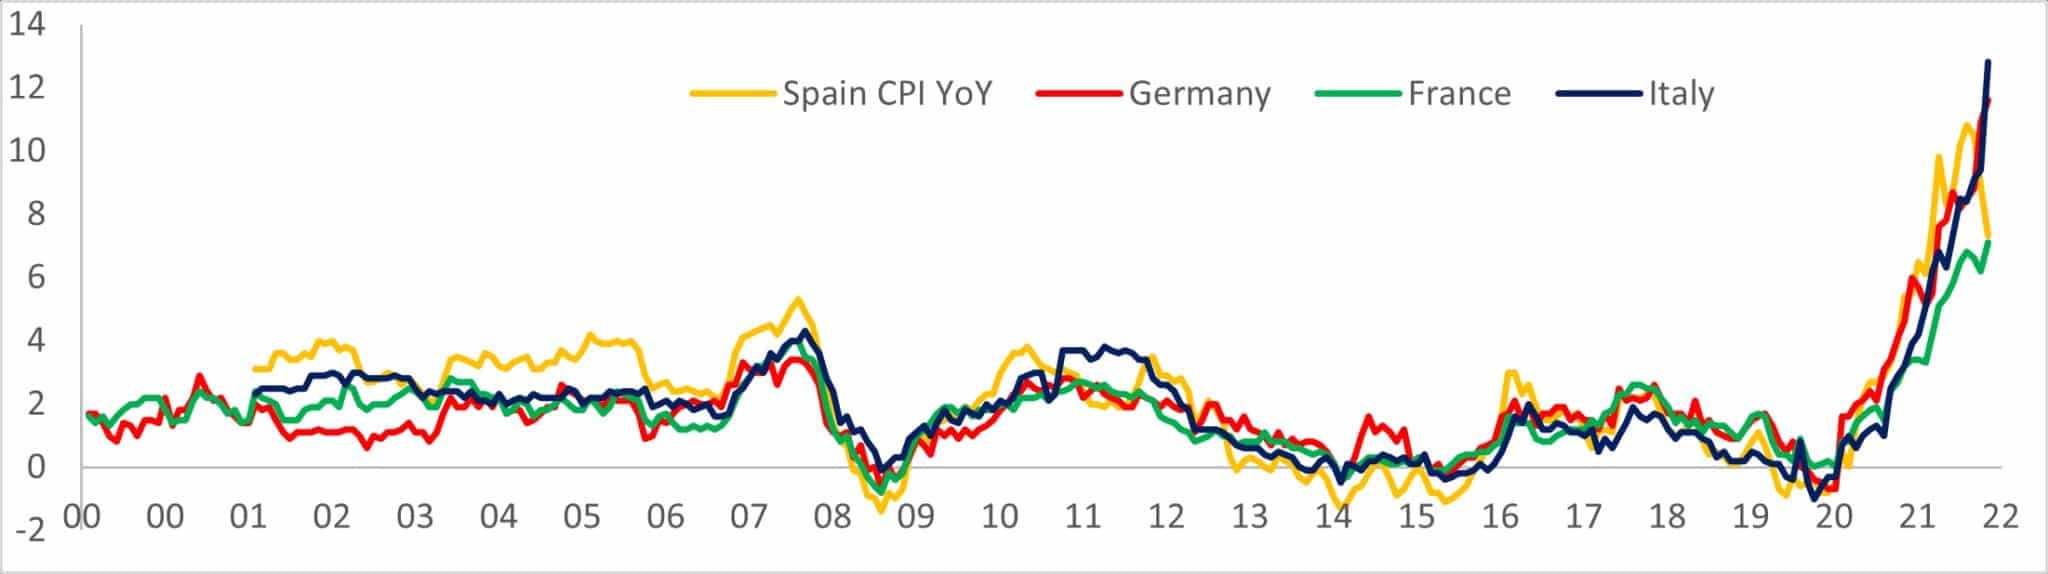 Grafiek met de stijging op jaarbasis van de CPI in Spanje, Duitsland, Frankrijk en Italië van 2000 tot 2022